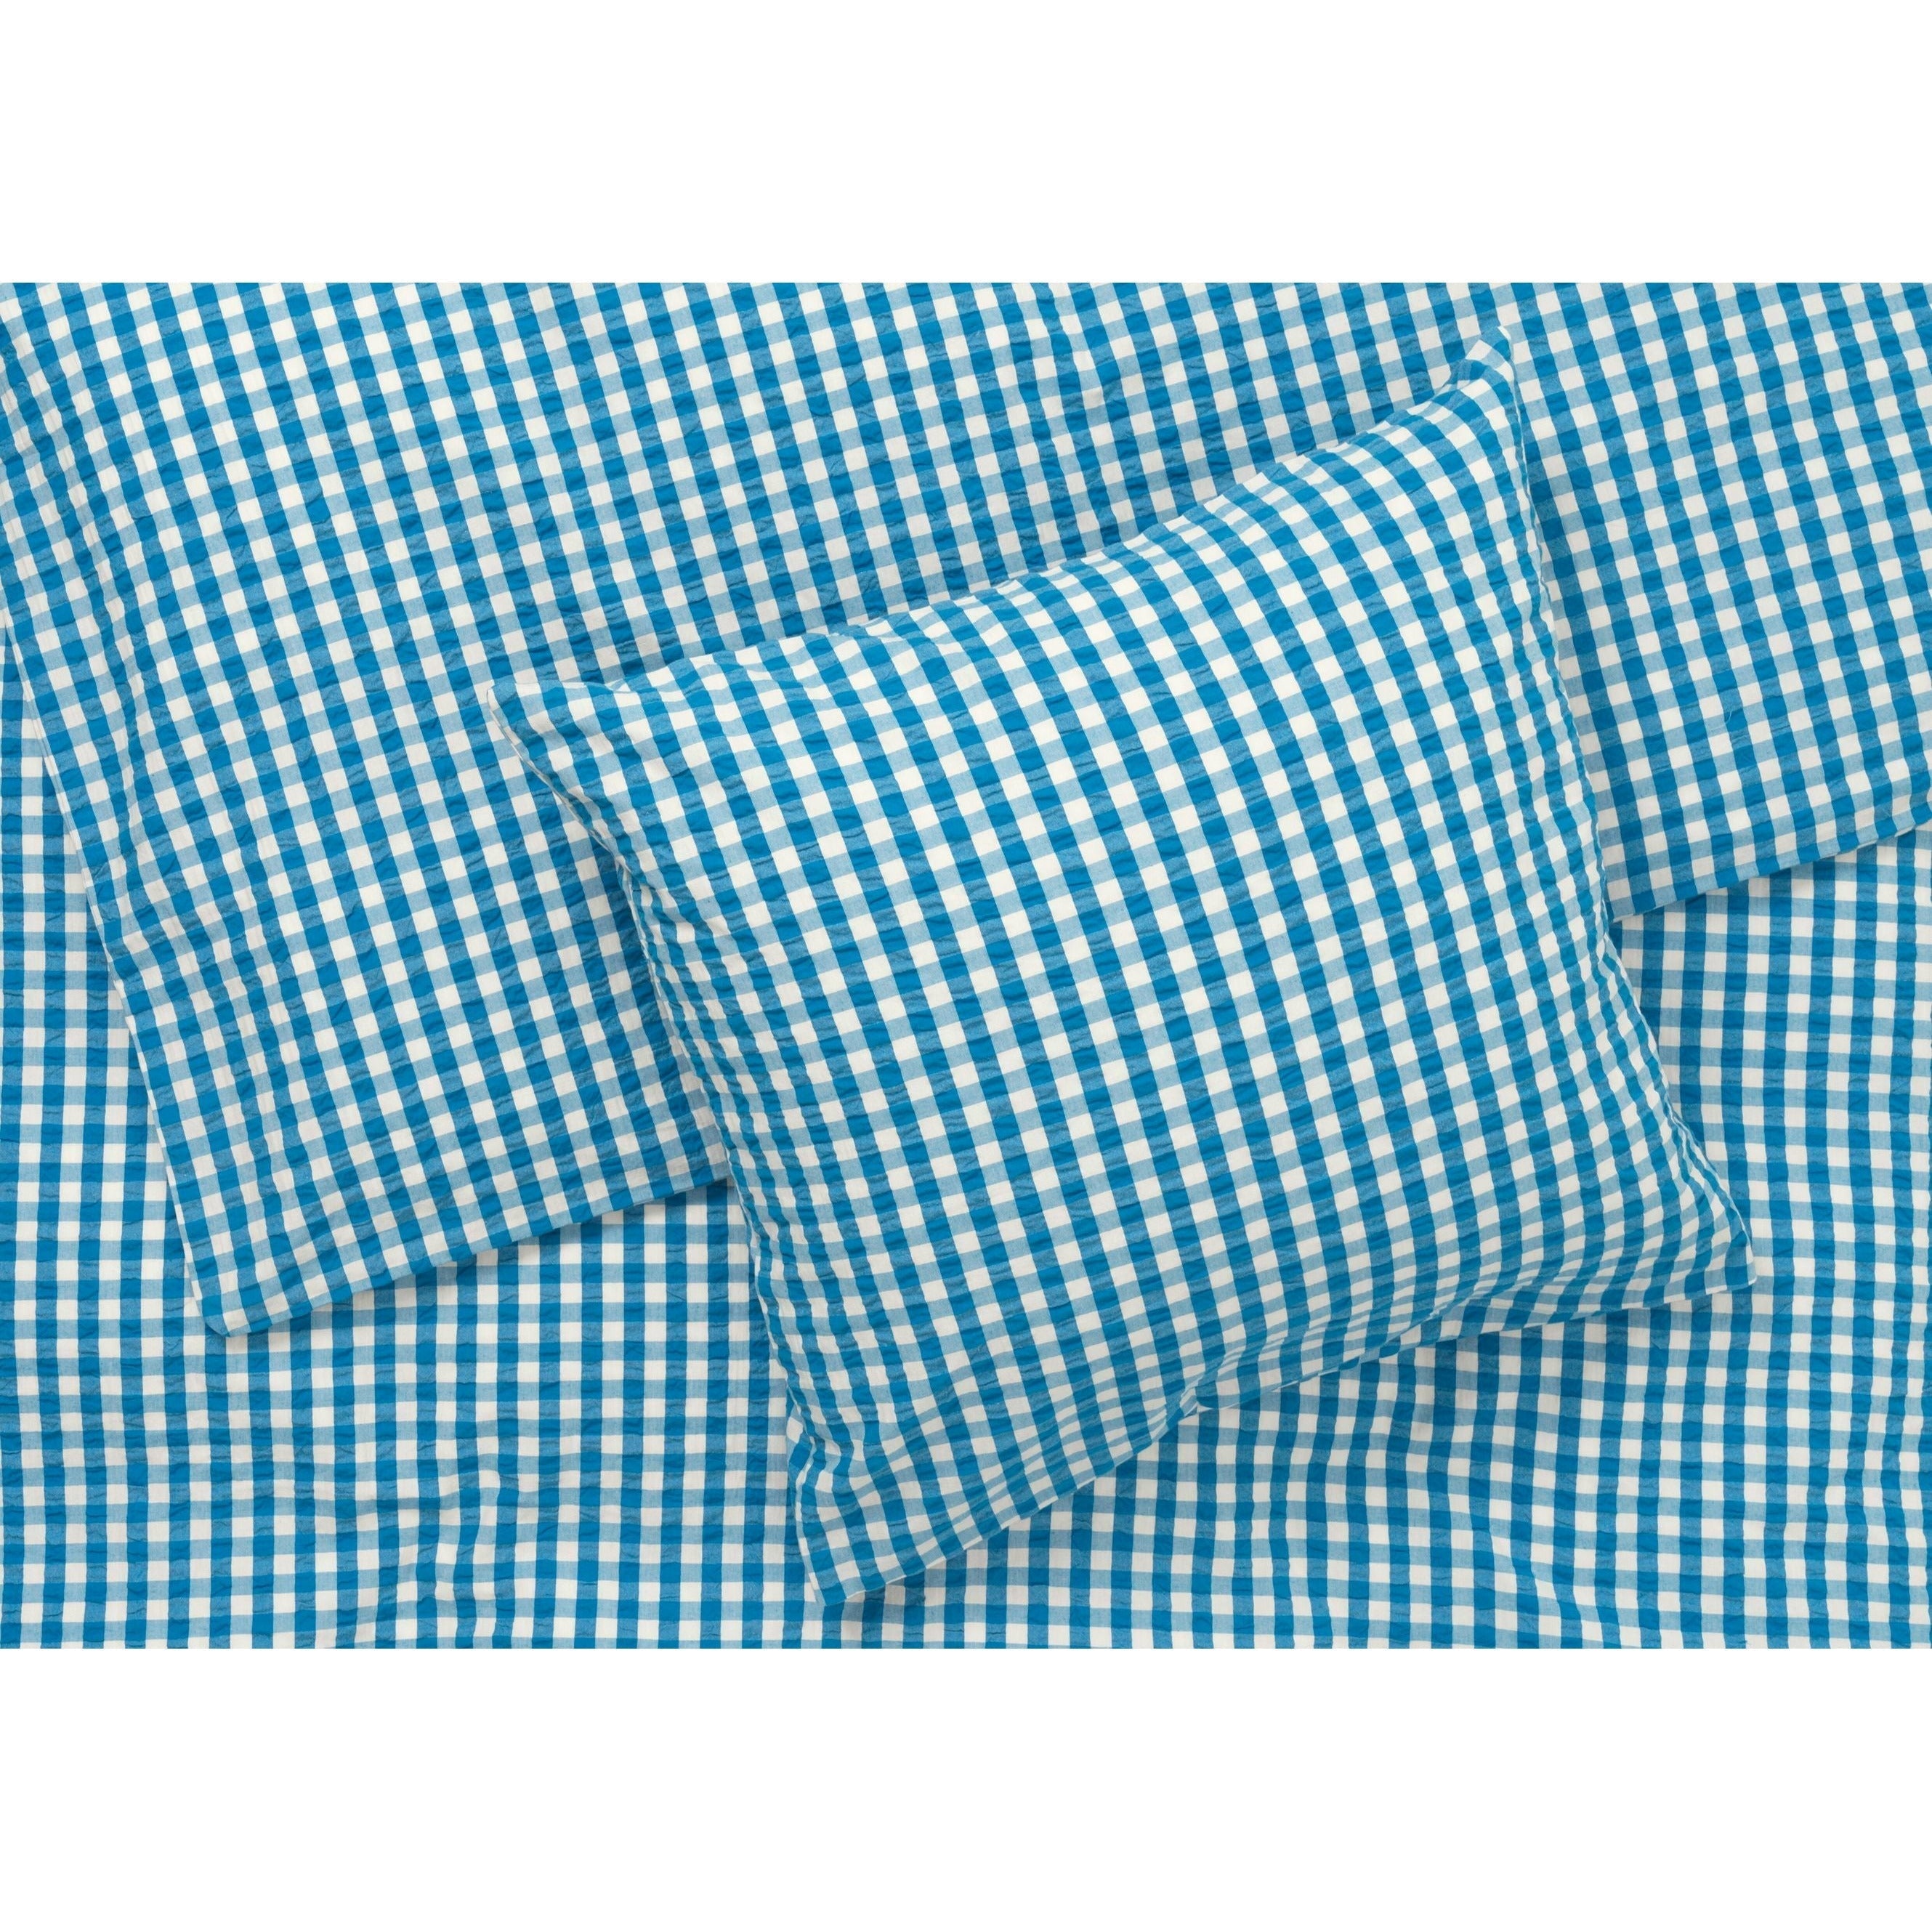 Juna Bæk & Wave -sängkläder 140x200 cm, blå/björk